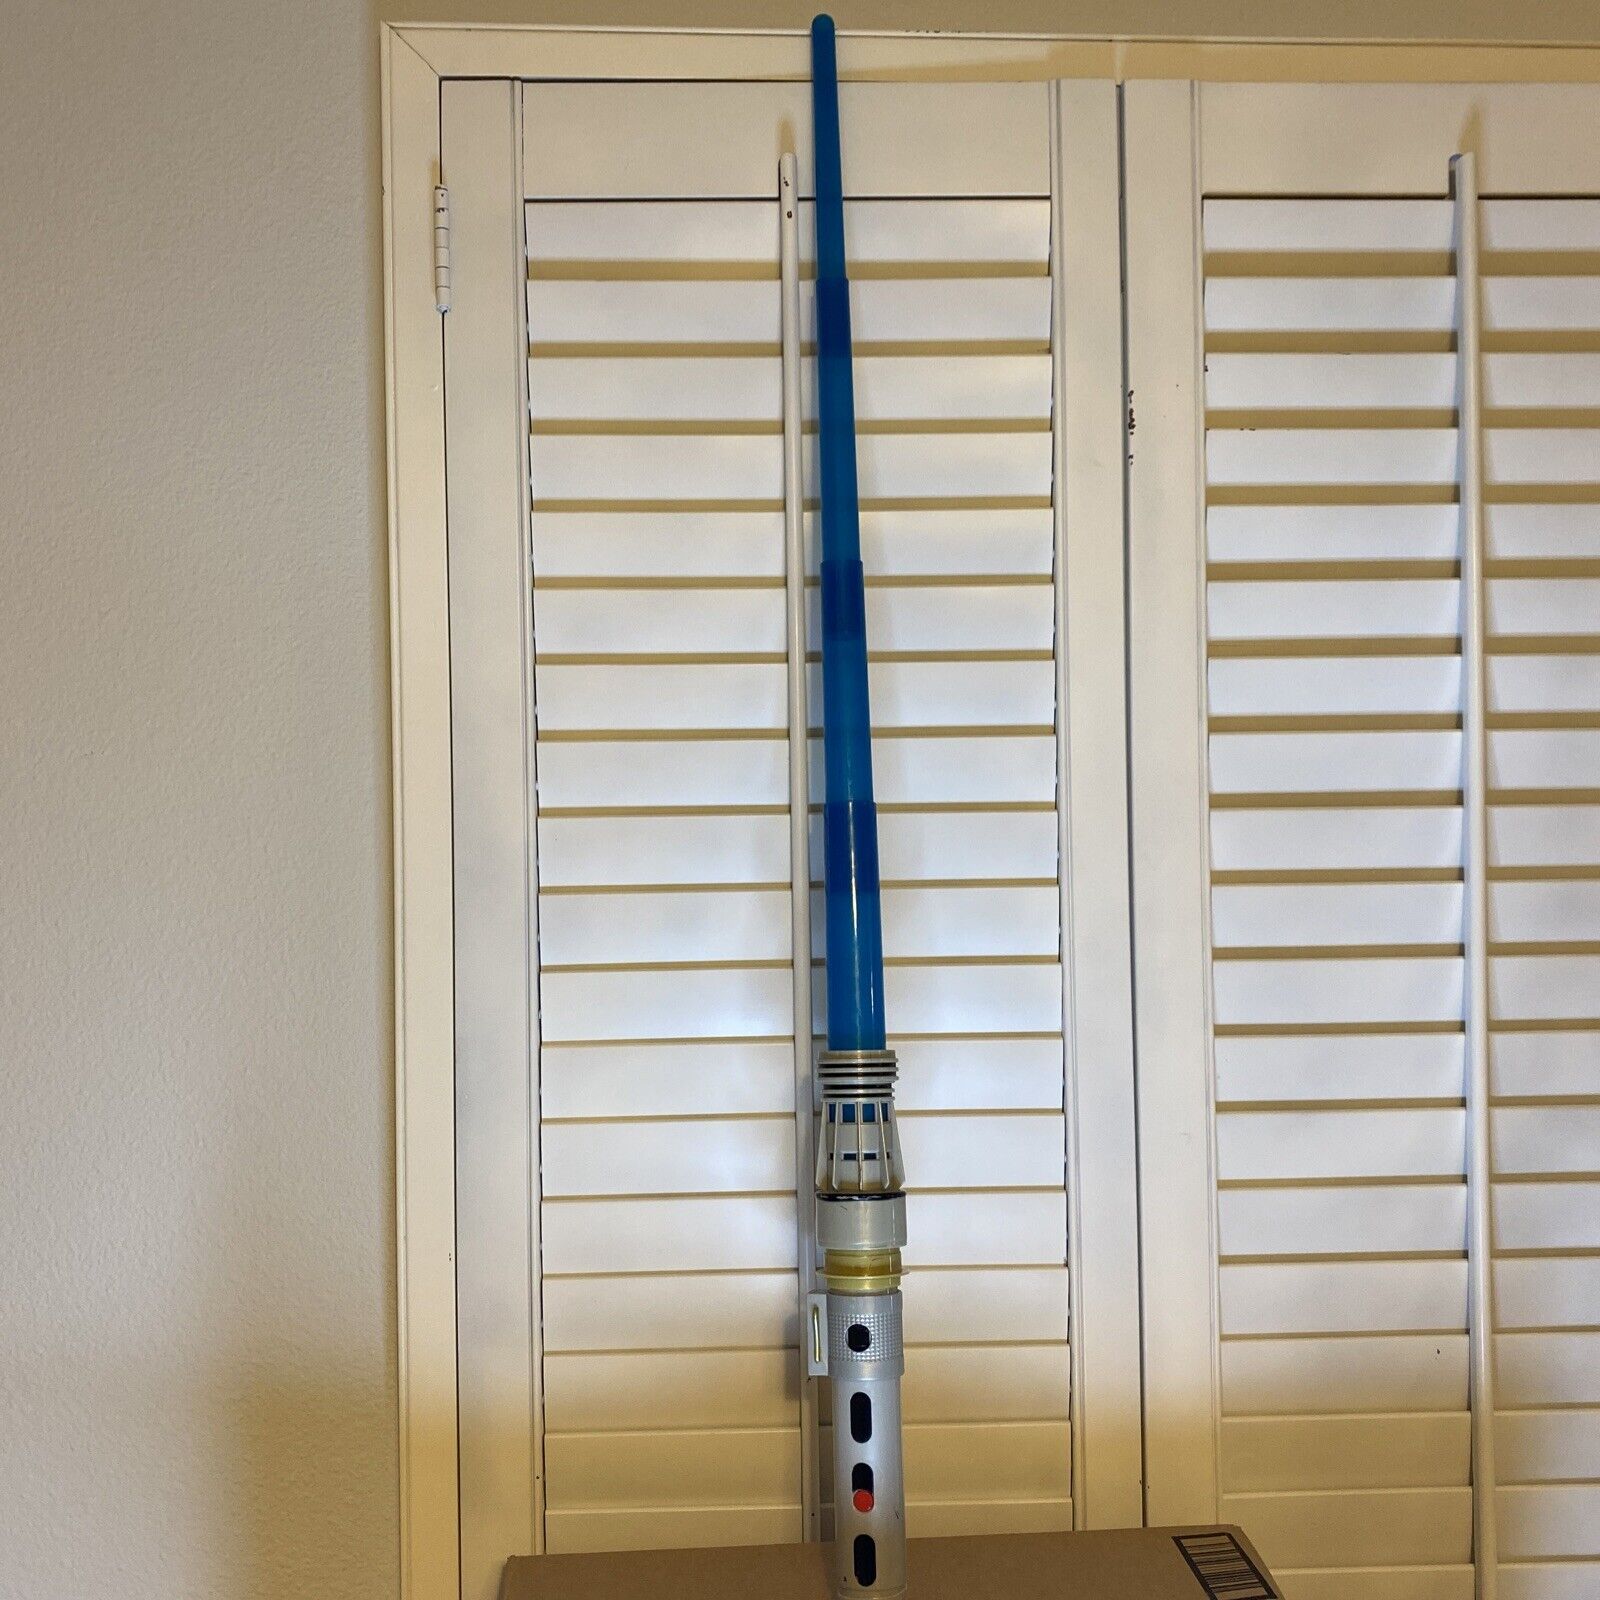 Disney LFL Star Wars Lightsaber Blue Tested Works